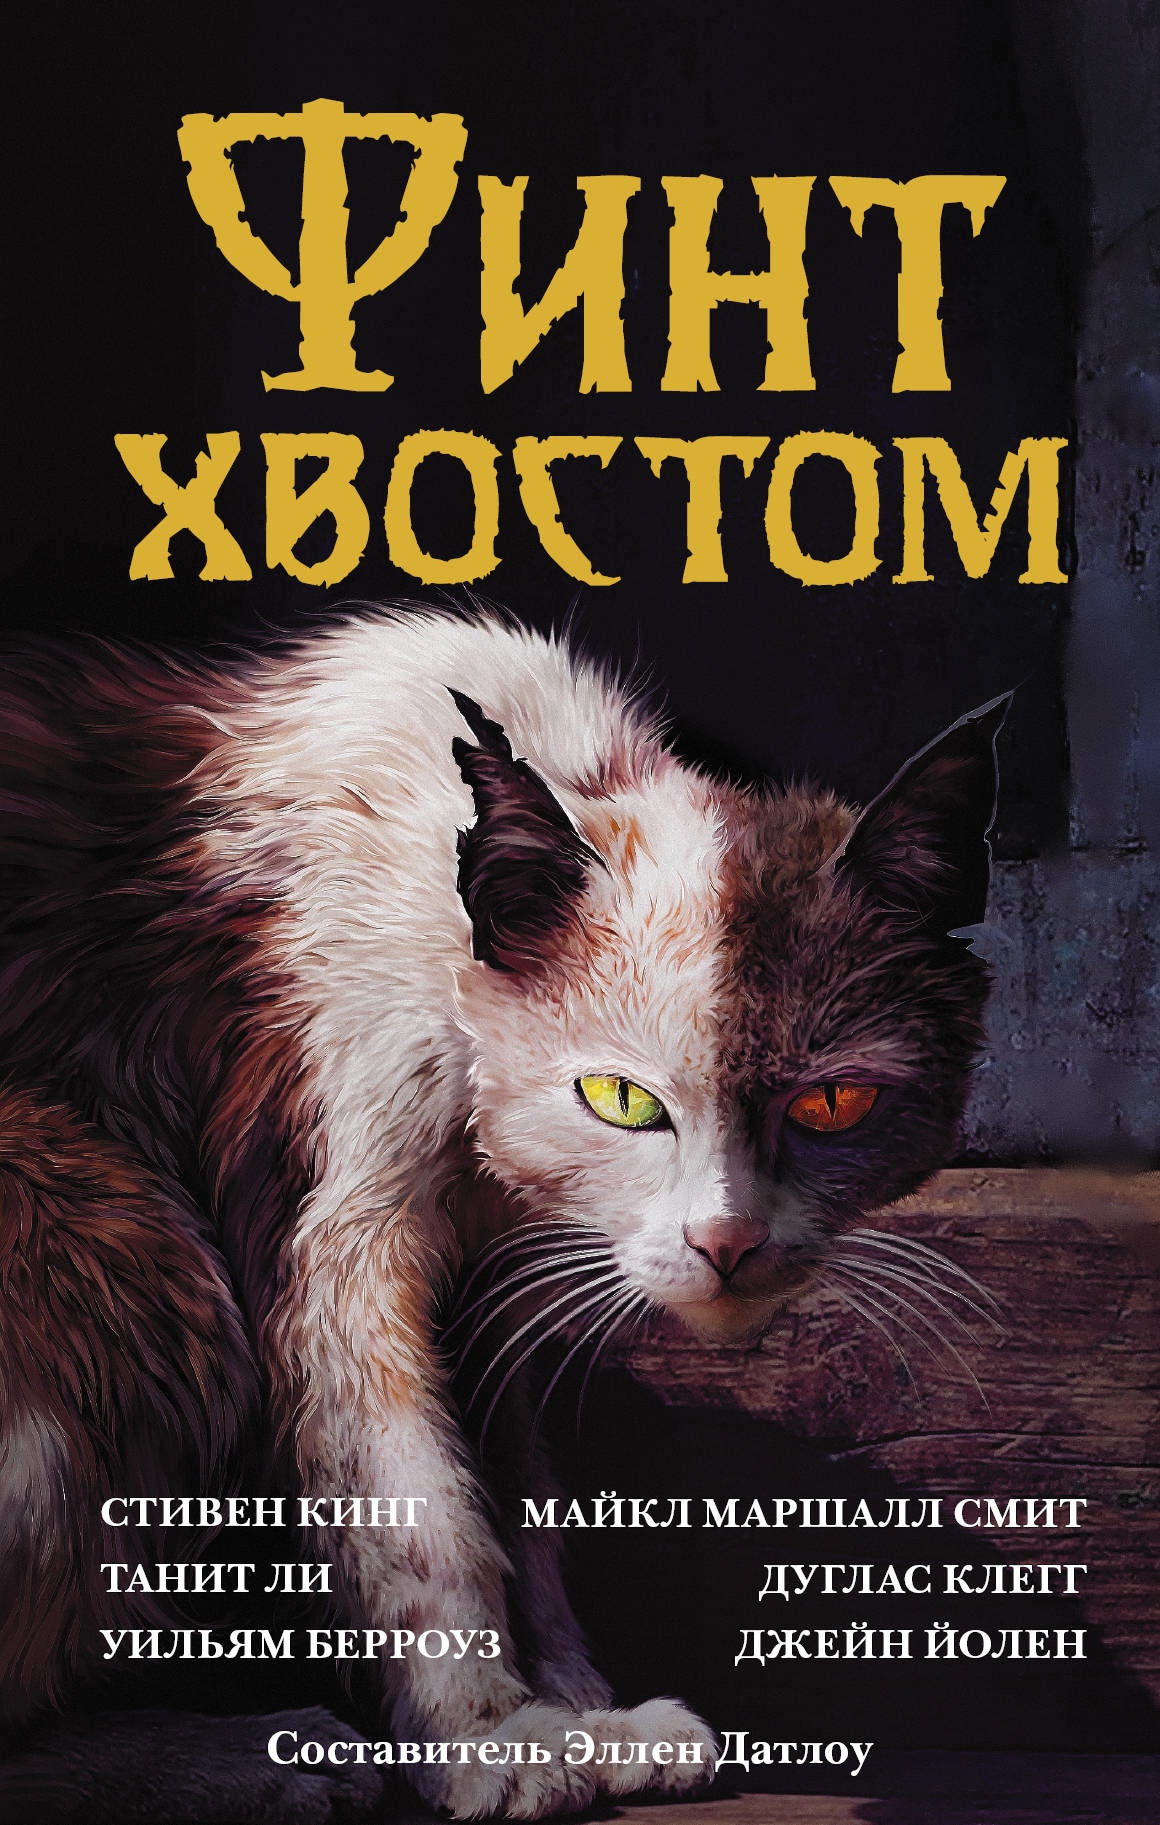 Book “Финт хвостом” by Стивен Кинг — February 14, 2020